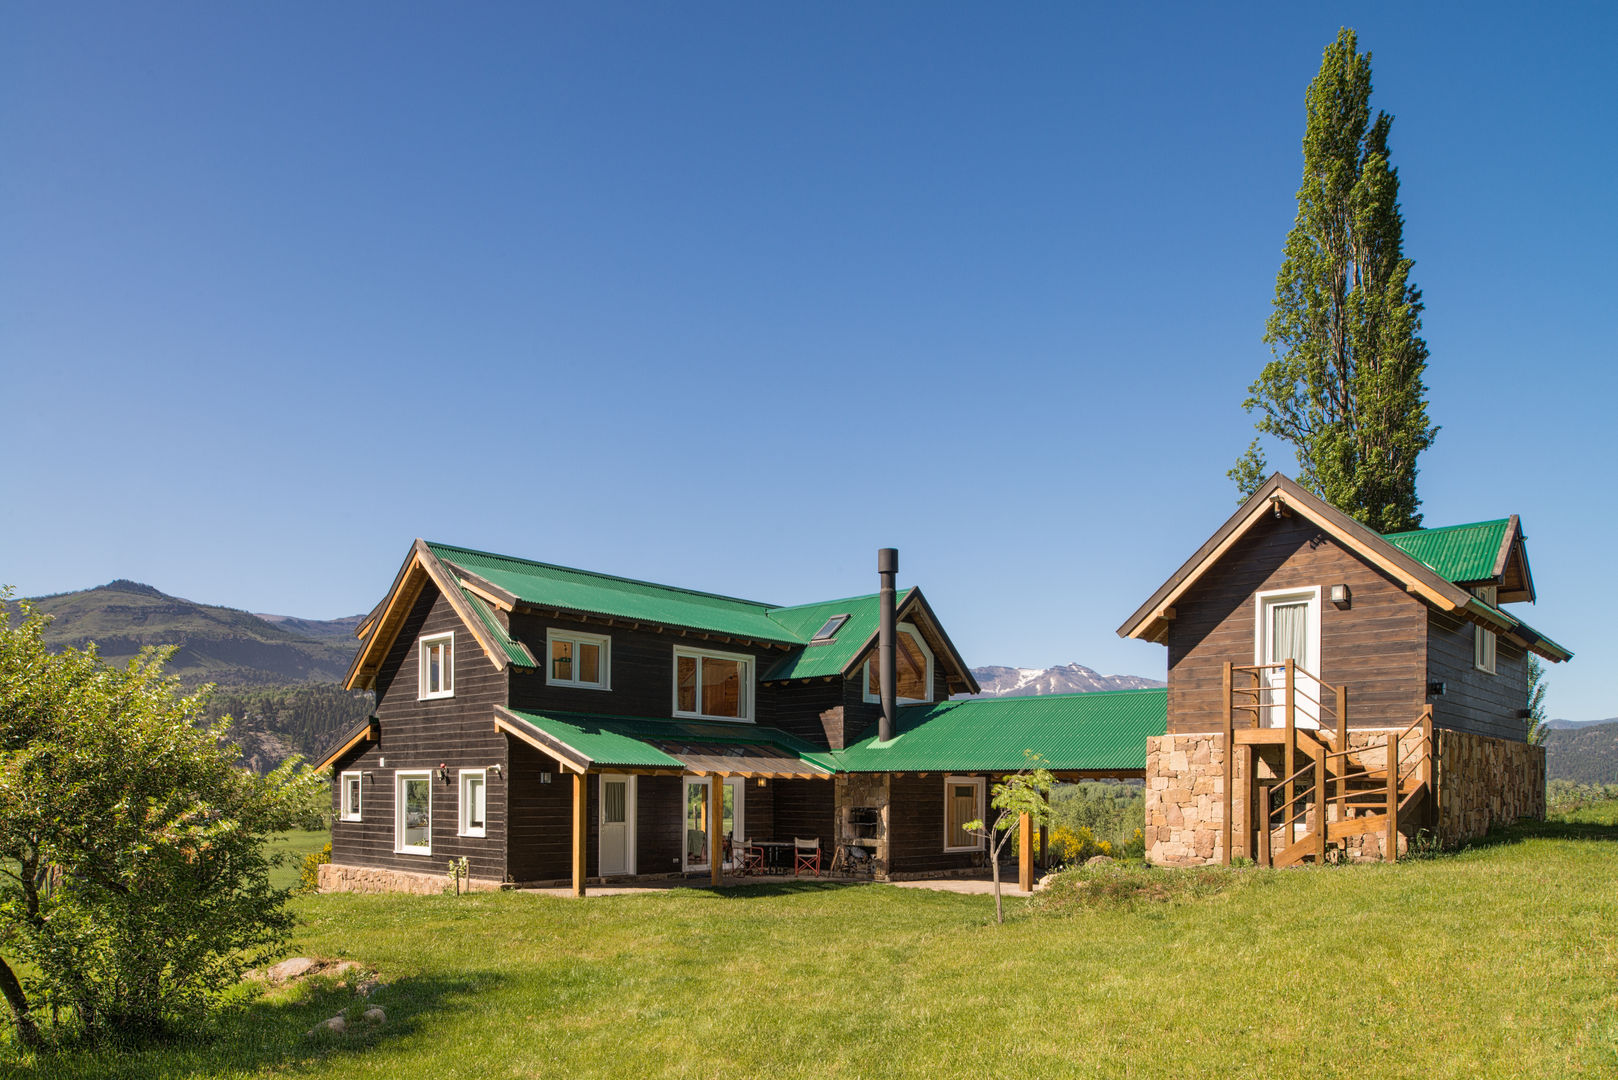 Casa de madera en San Martin de los Andes, Patagonia Log Homes - Arquitectos - Neuquén Patagonia Log Homes - Arquitectos - Neuquén منزل خشبي خشب متين Multicolored